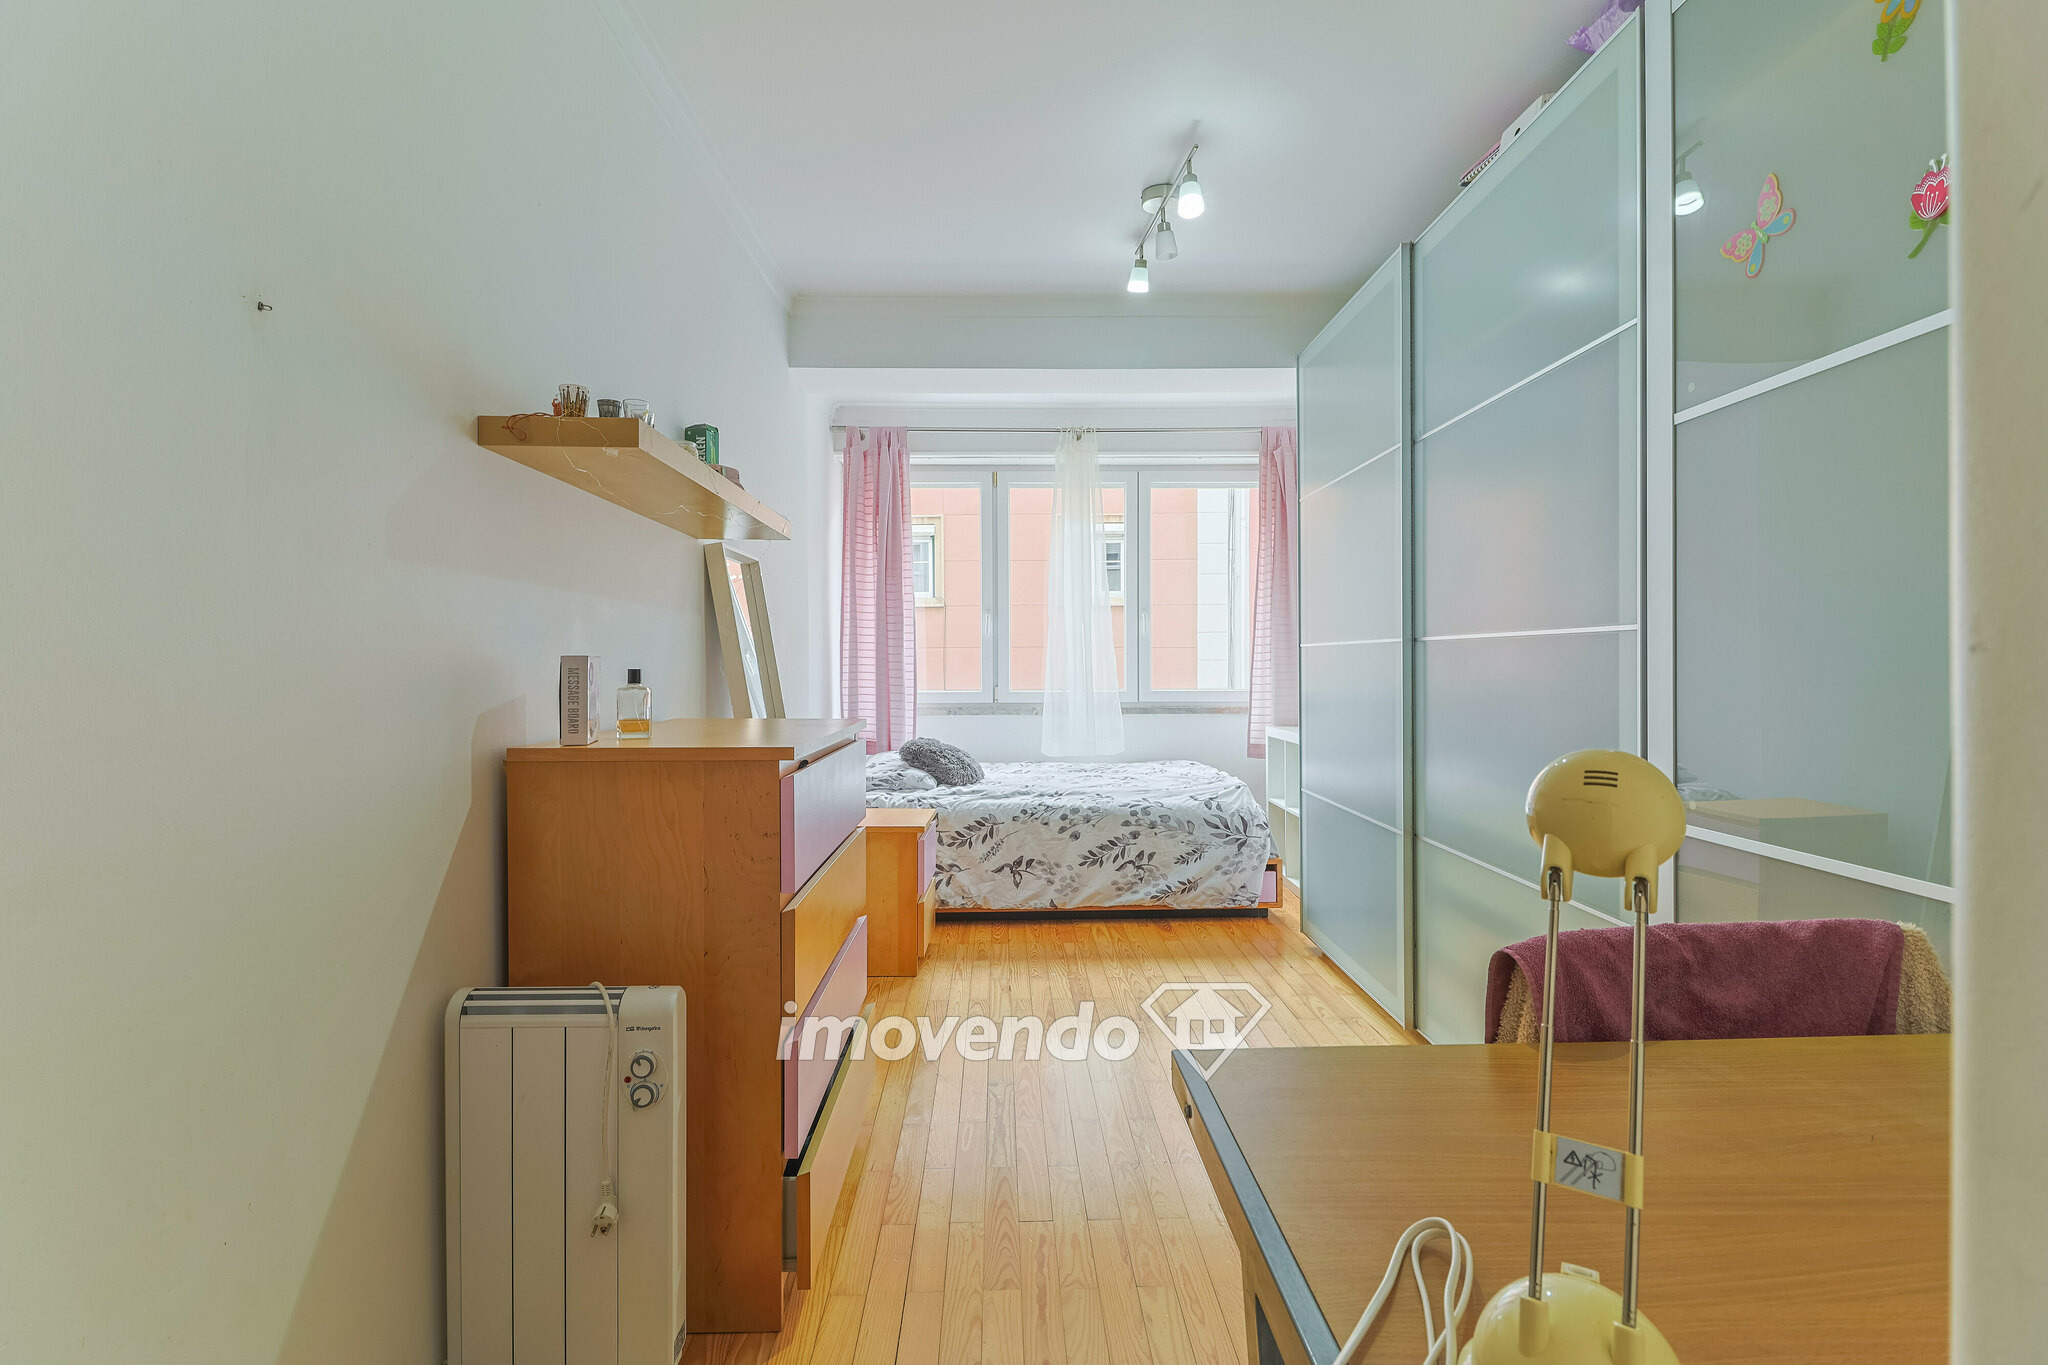 Apartamento T3, totalmente mobilado e equipado, em Alcântara, Lisboa